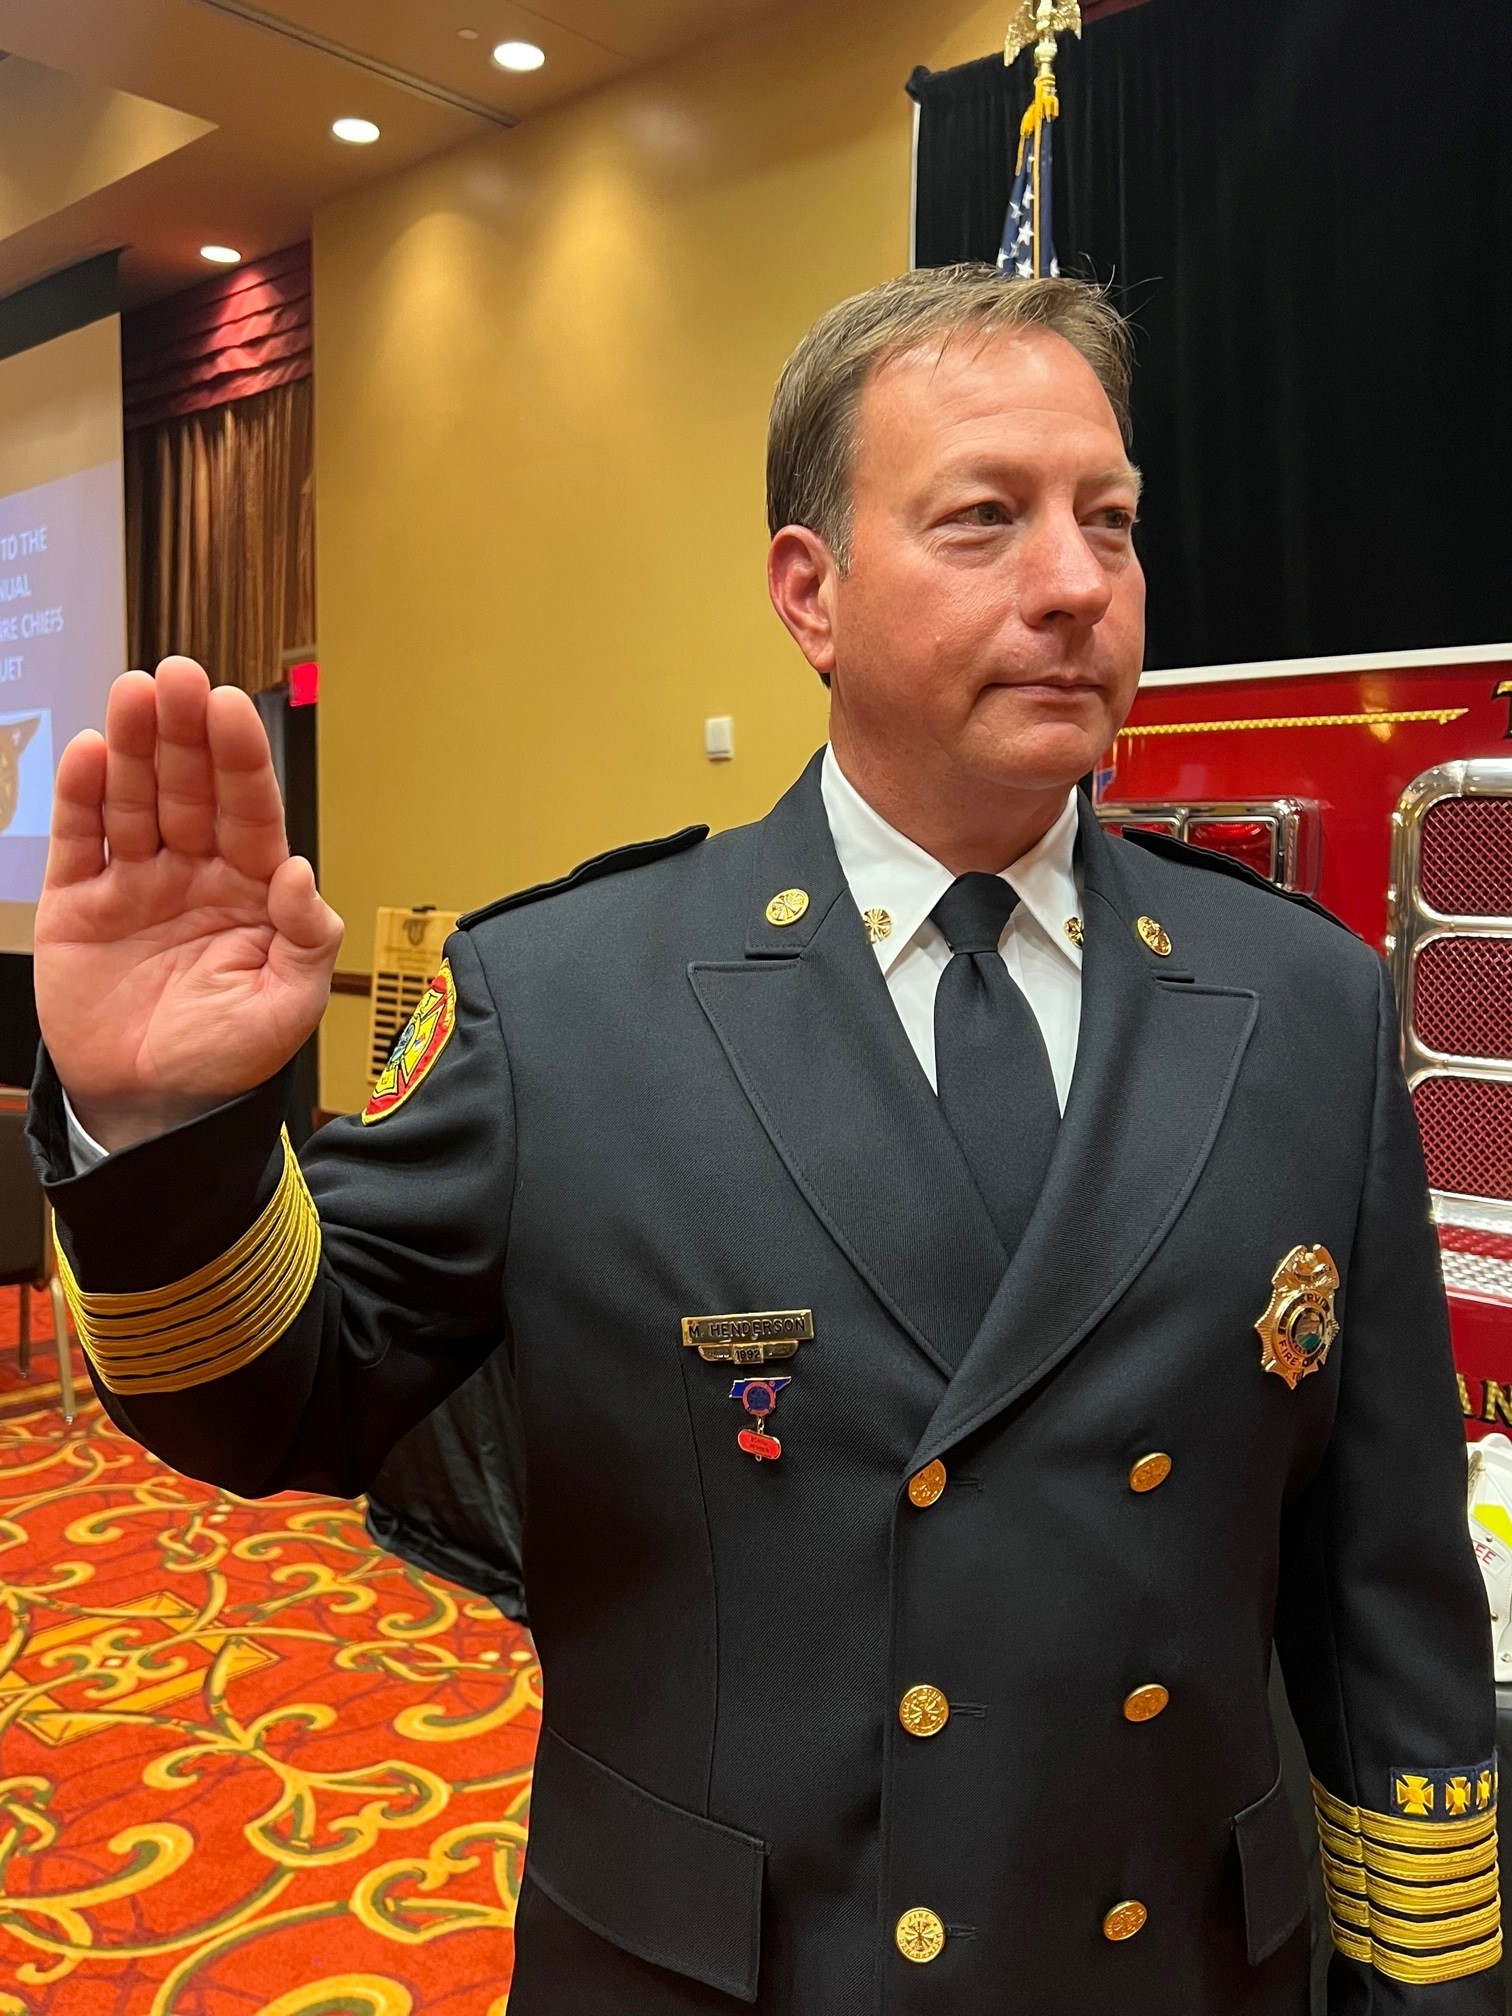 Feuerwehrchef von Sevierville zum Verbandspräsidenten ernannt